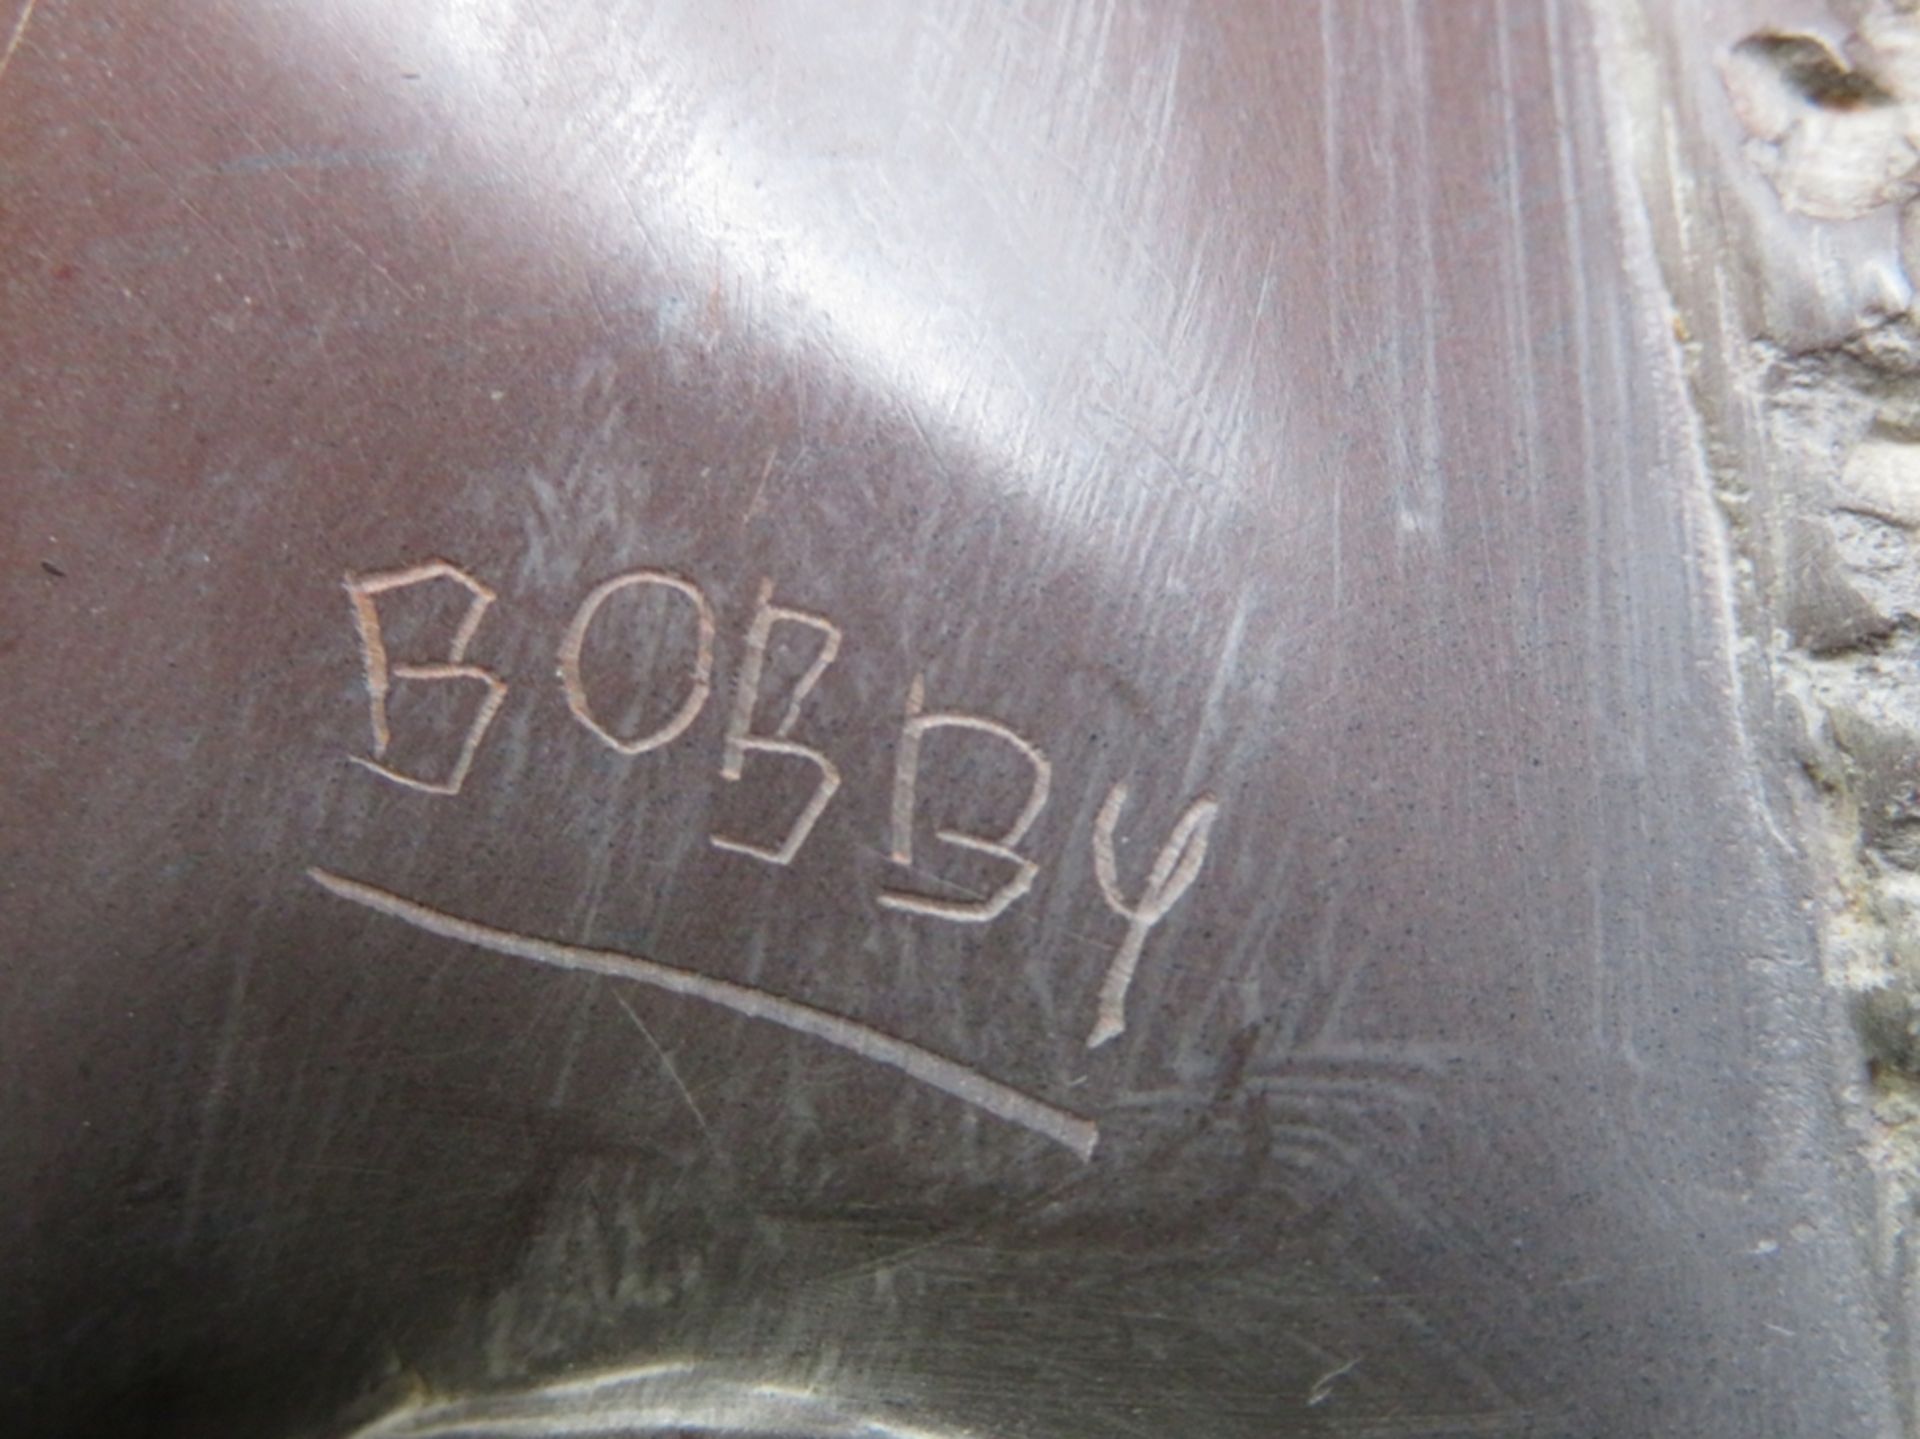 BOBBY, Afrikanischer Künstler, Zwei Elefanten, Speckstein geschnitzt, sign., 19,8 x 25,4 x 13 cm. - Bild 2 aus 2